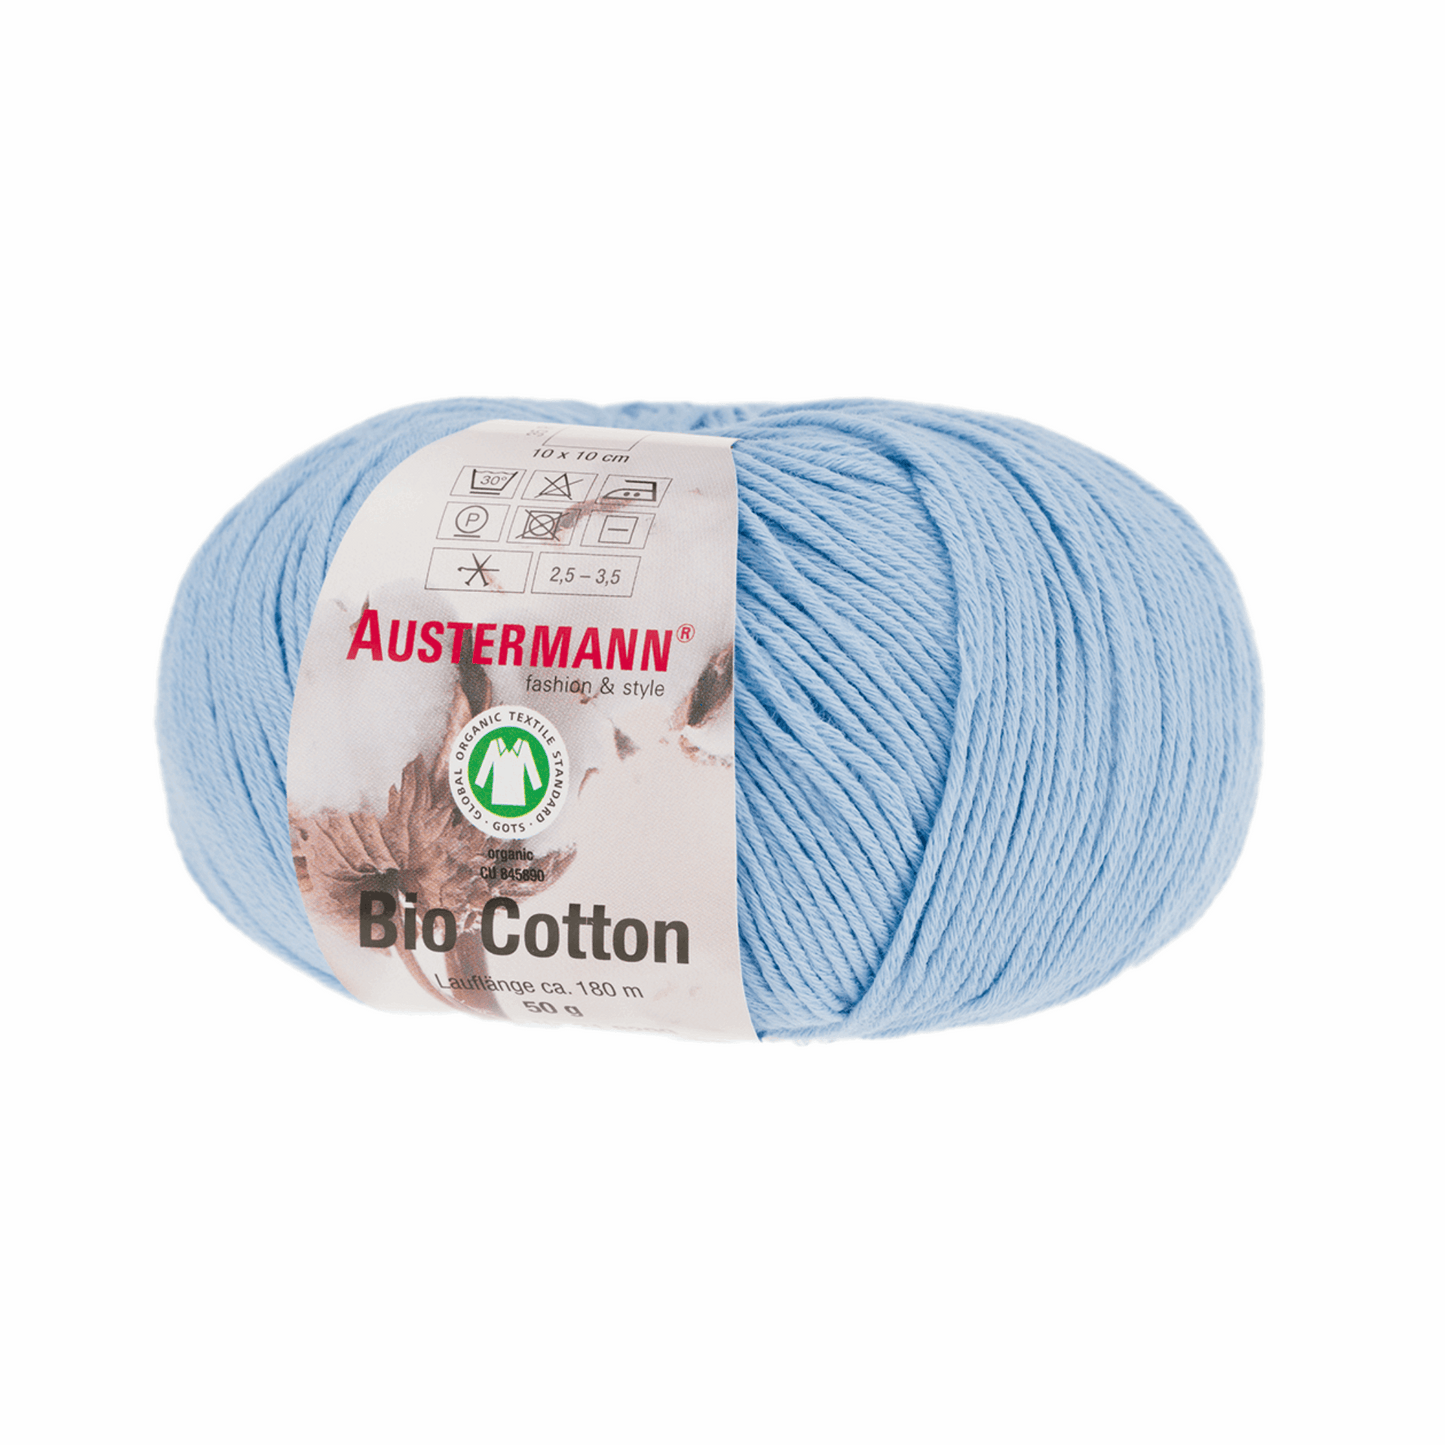 Schoeller-Austermann Gots Organic Cotton, 50g, 98299, color 26